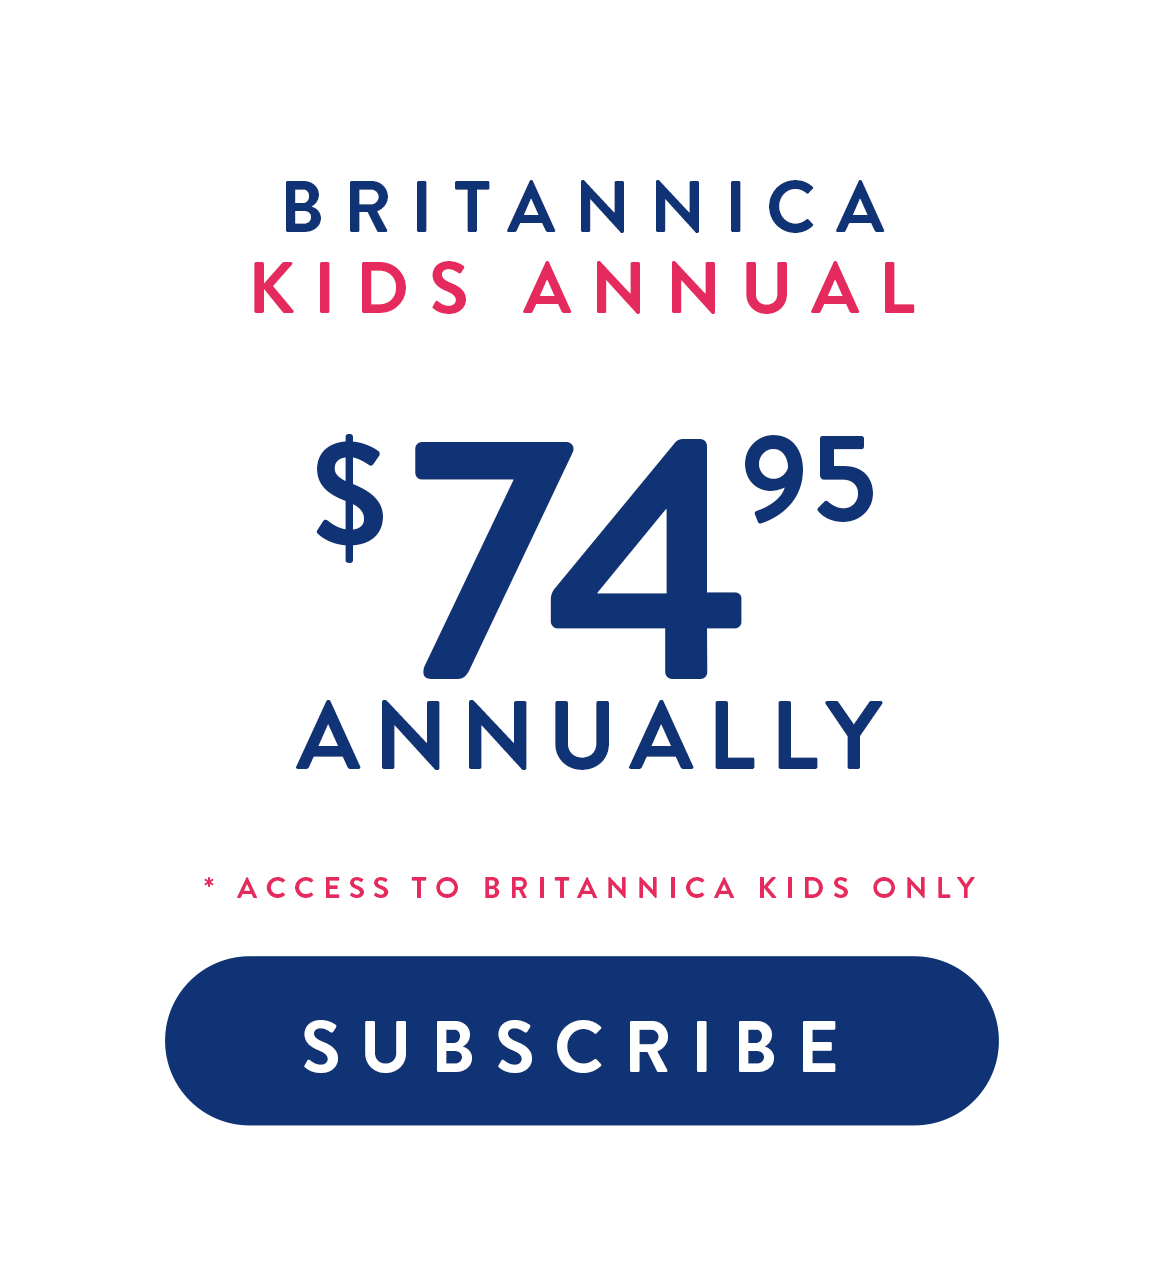 Britannica Kids Annual for $74.95 Annually